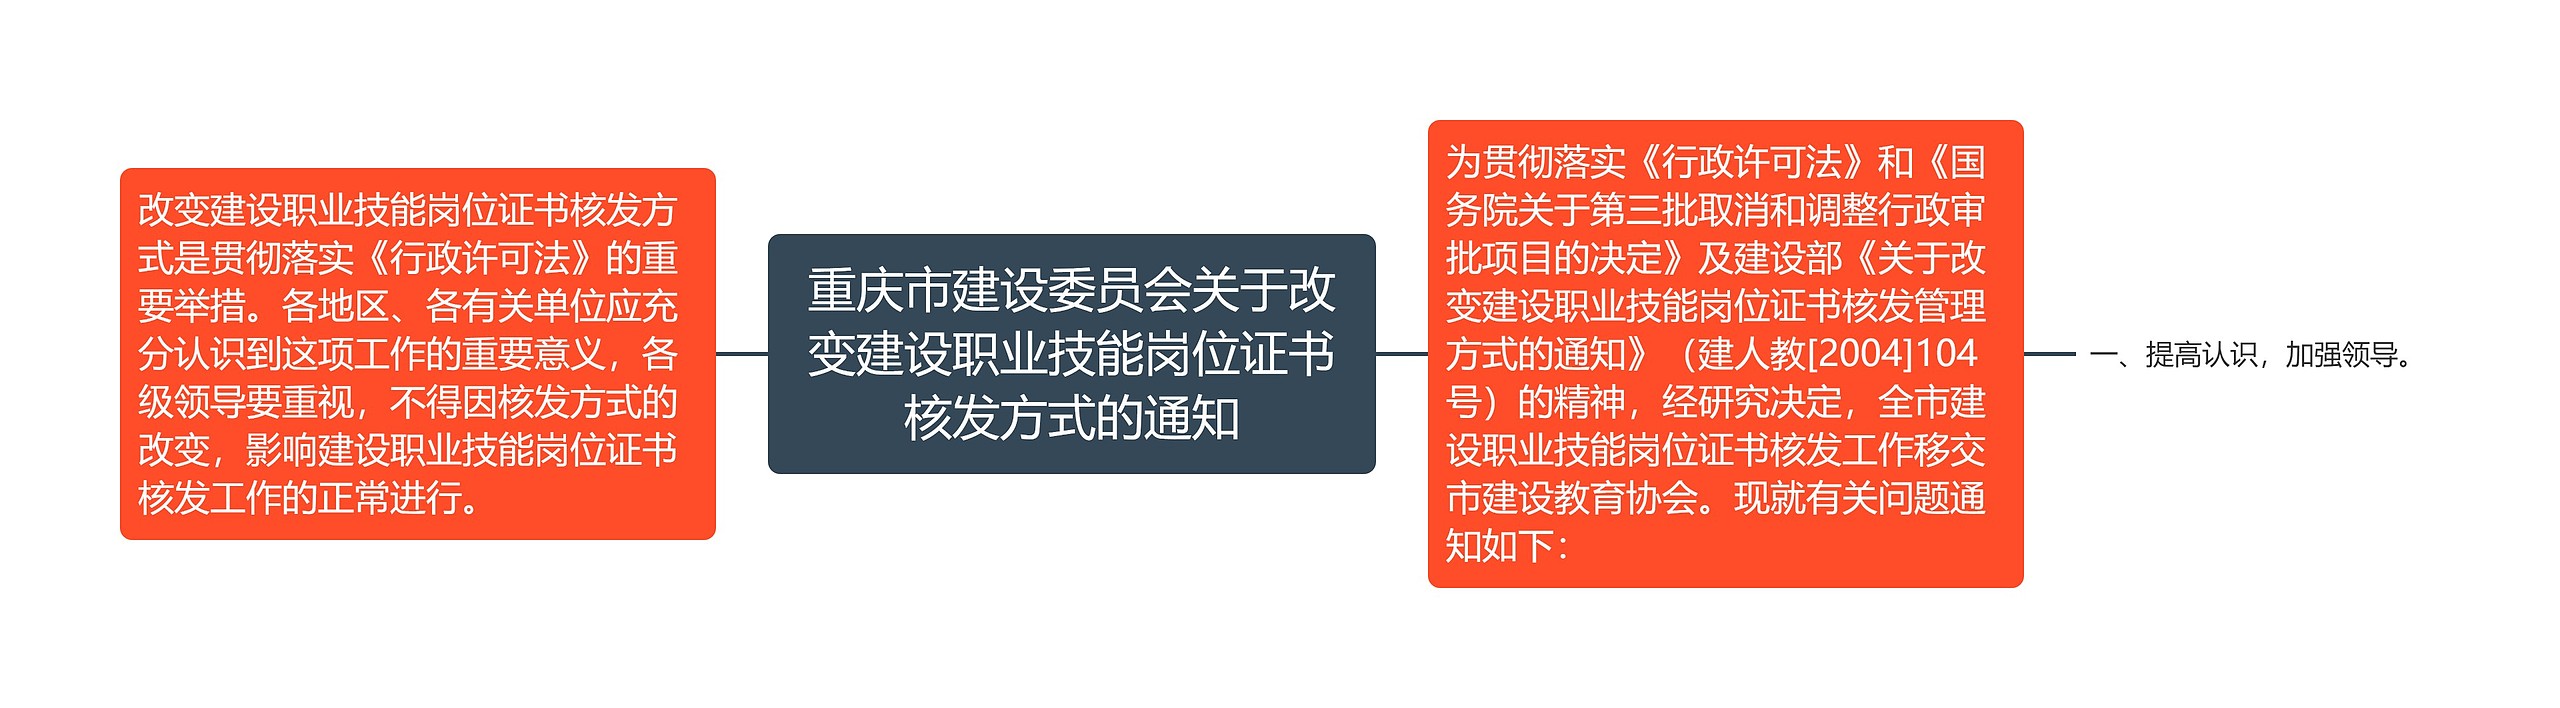 重庆市建设委员会关于改变建设职业技能岗位证书核发方式的通知思维导图